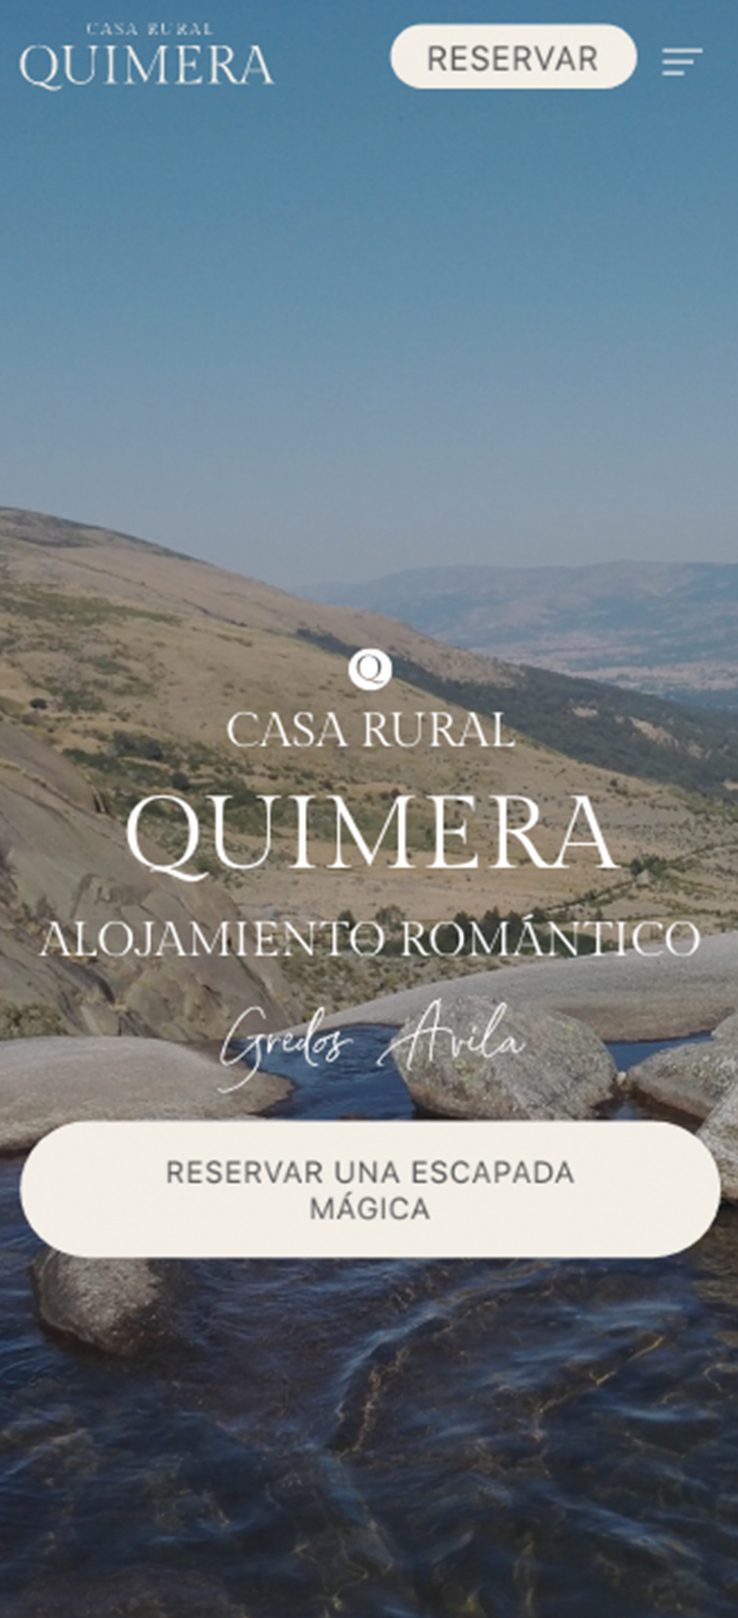 ▷ Ejemplo de página web para casas rurales [A medida]